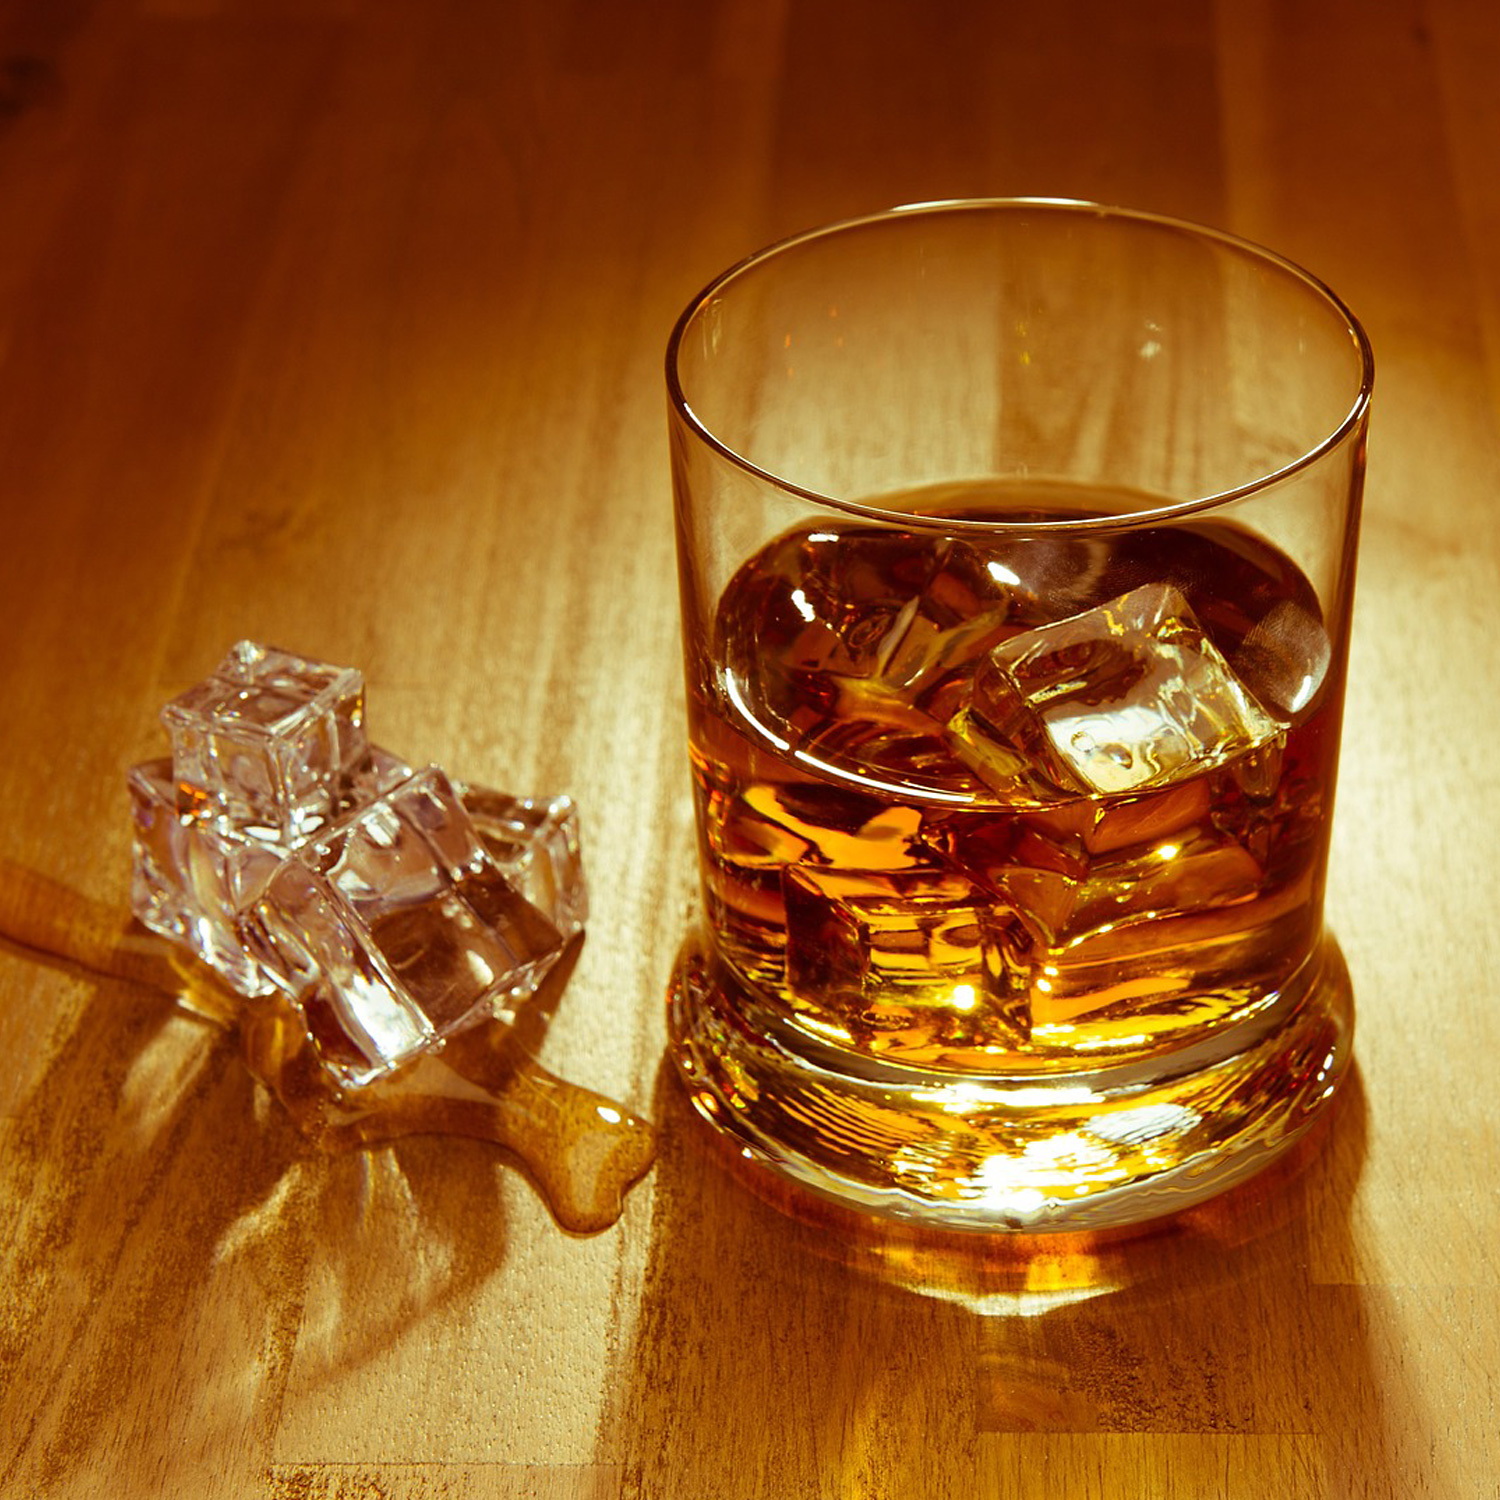 Lagavulin Single Malt Scotch Whisky 16Y